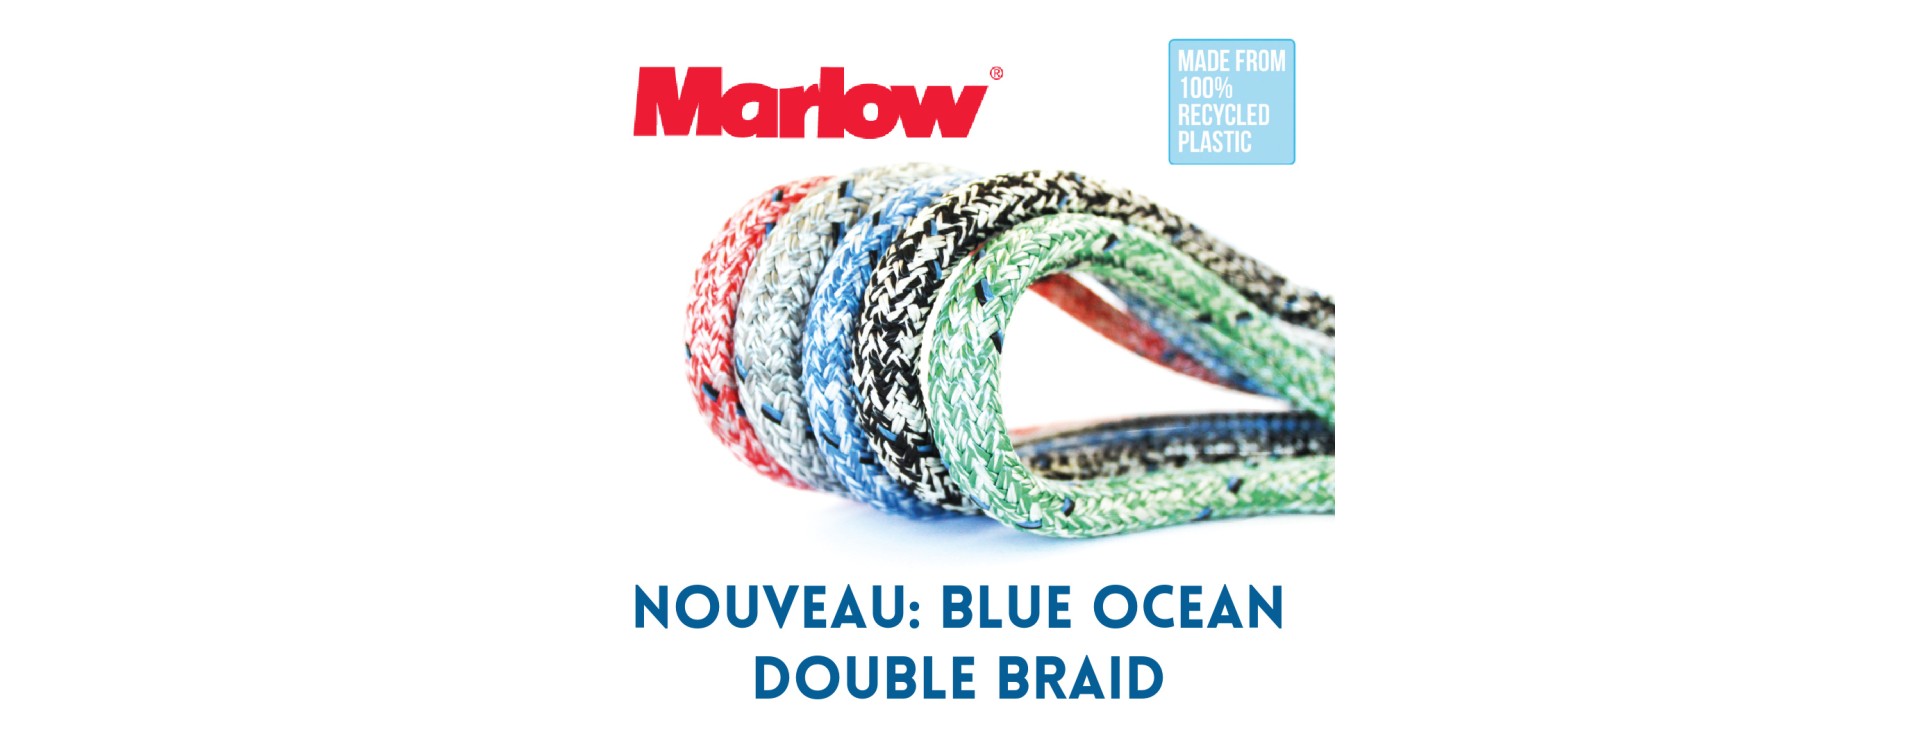 Von Marlow Ropes: die BLUE OCEAN Tauwerke, weil uns Nachhaltigkeit wichtig ist